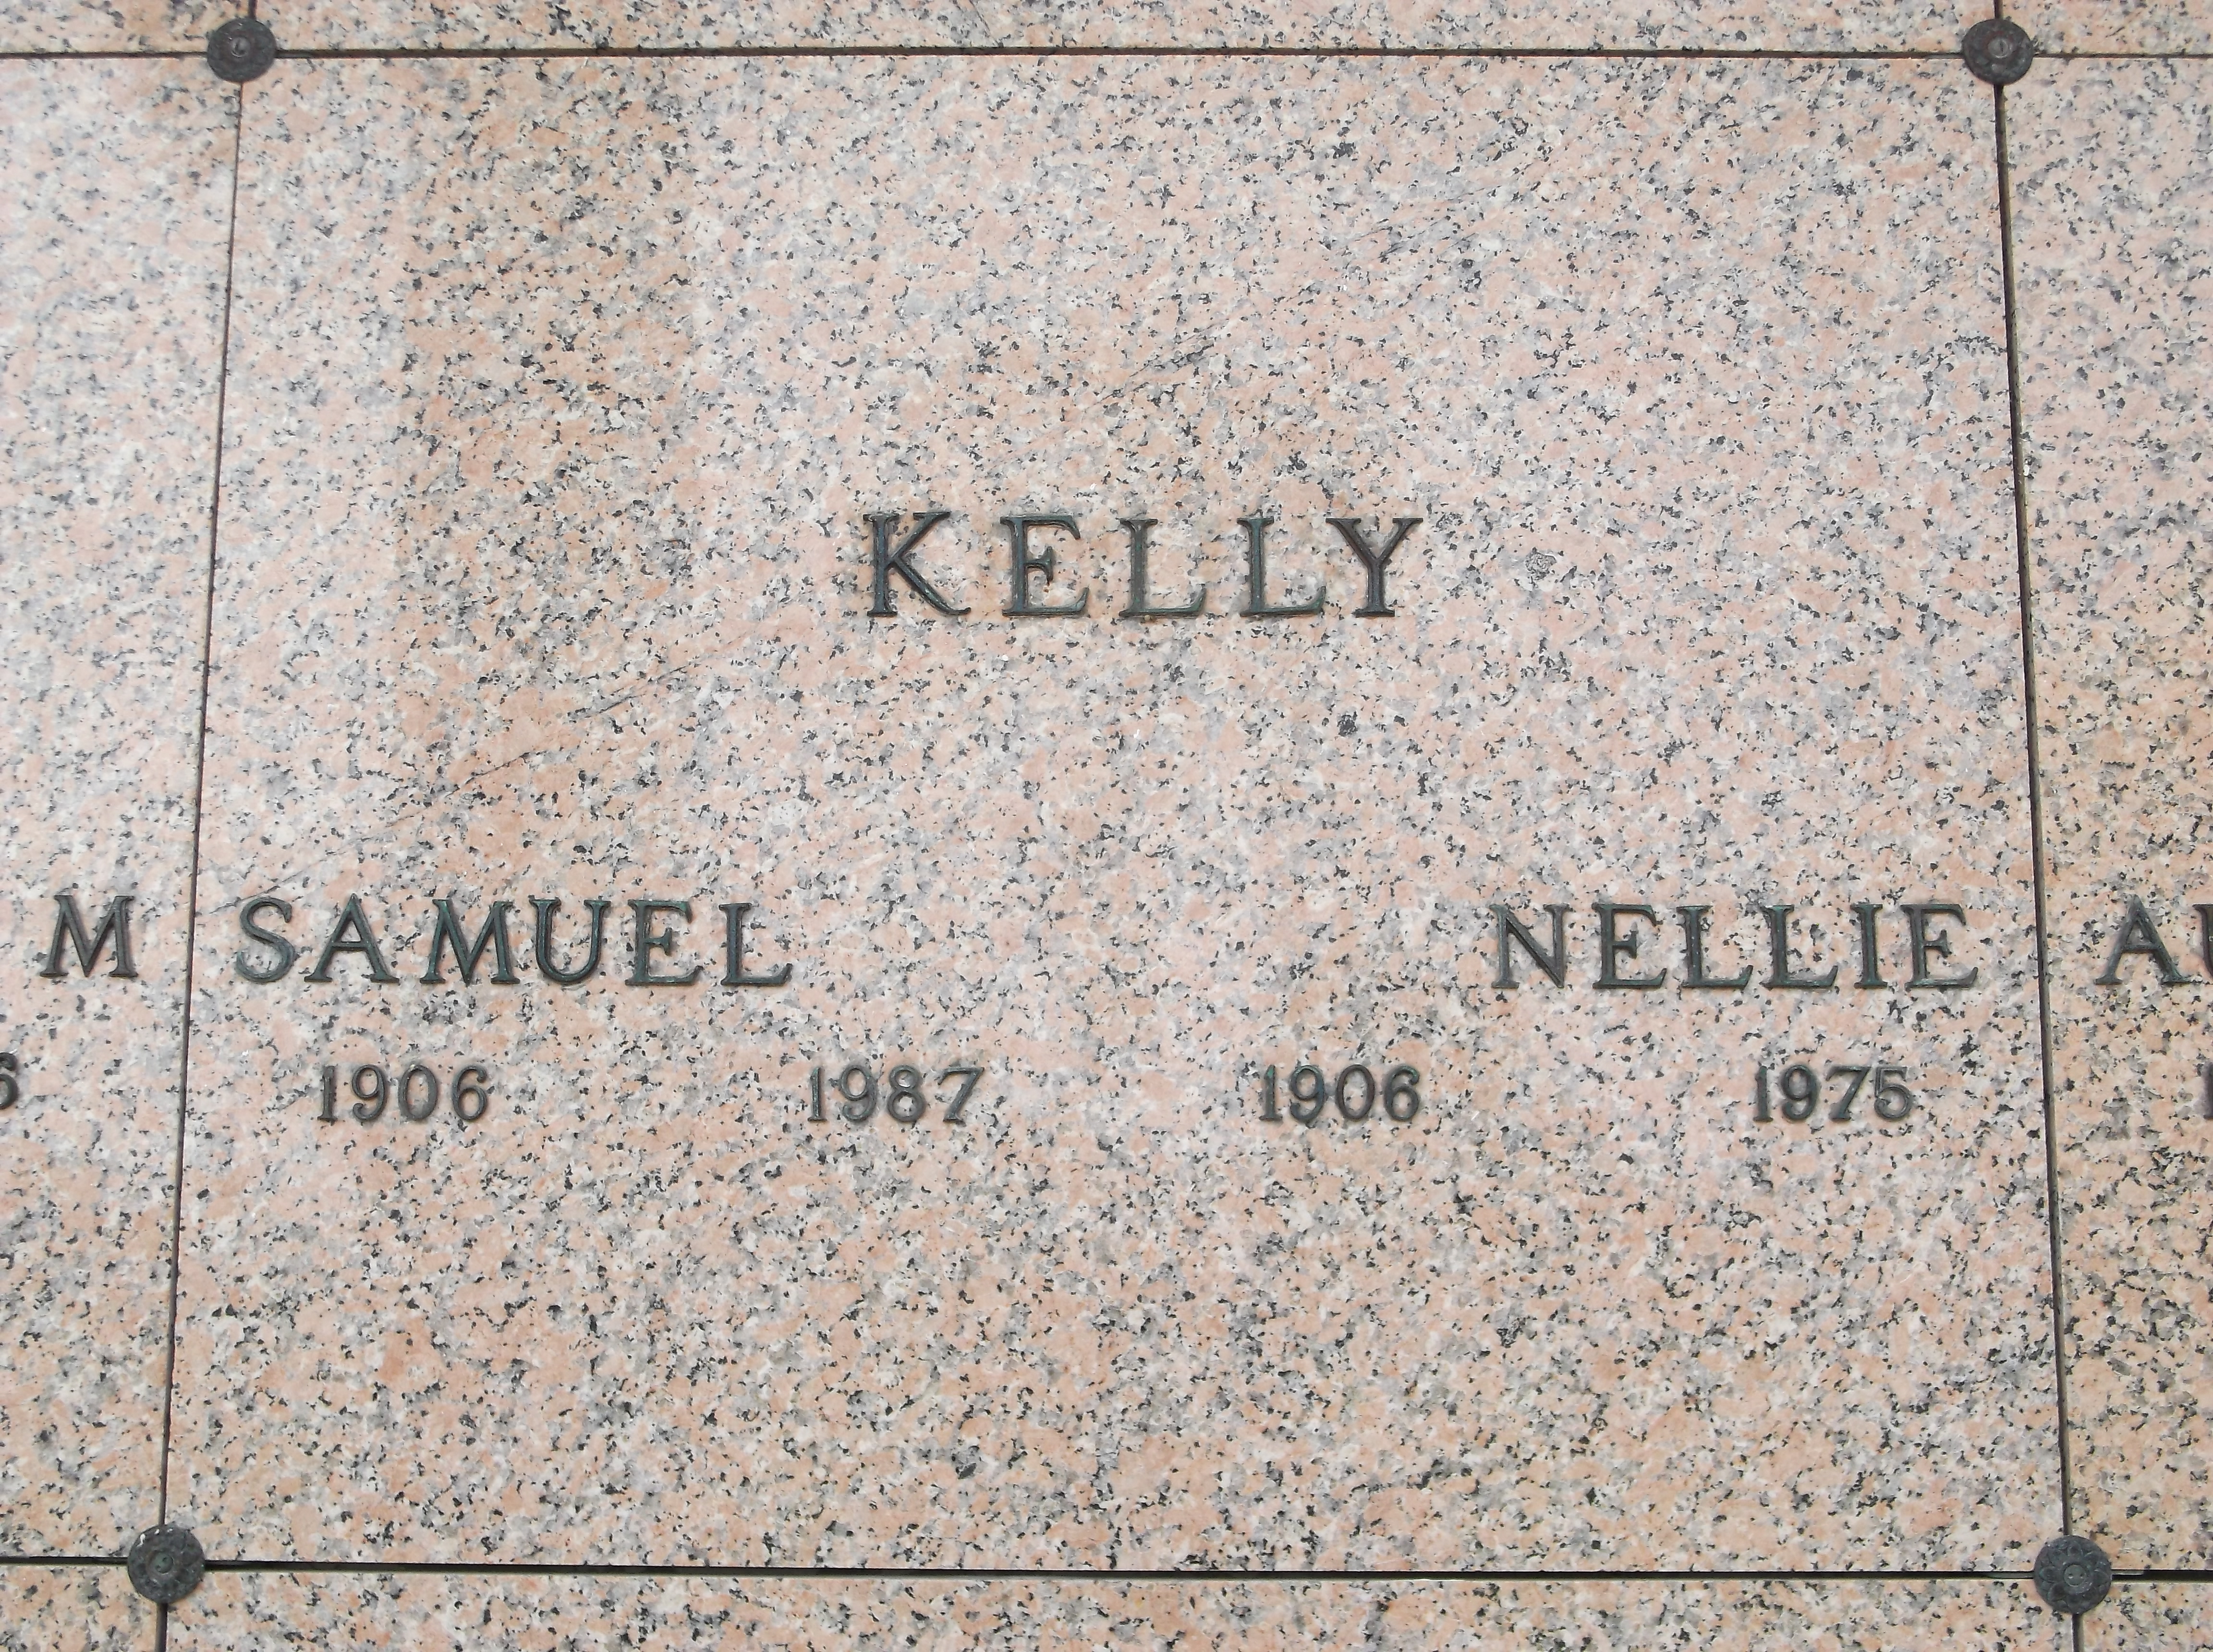 Samuel Kelly